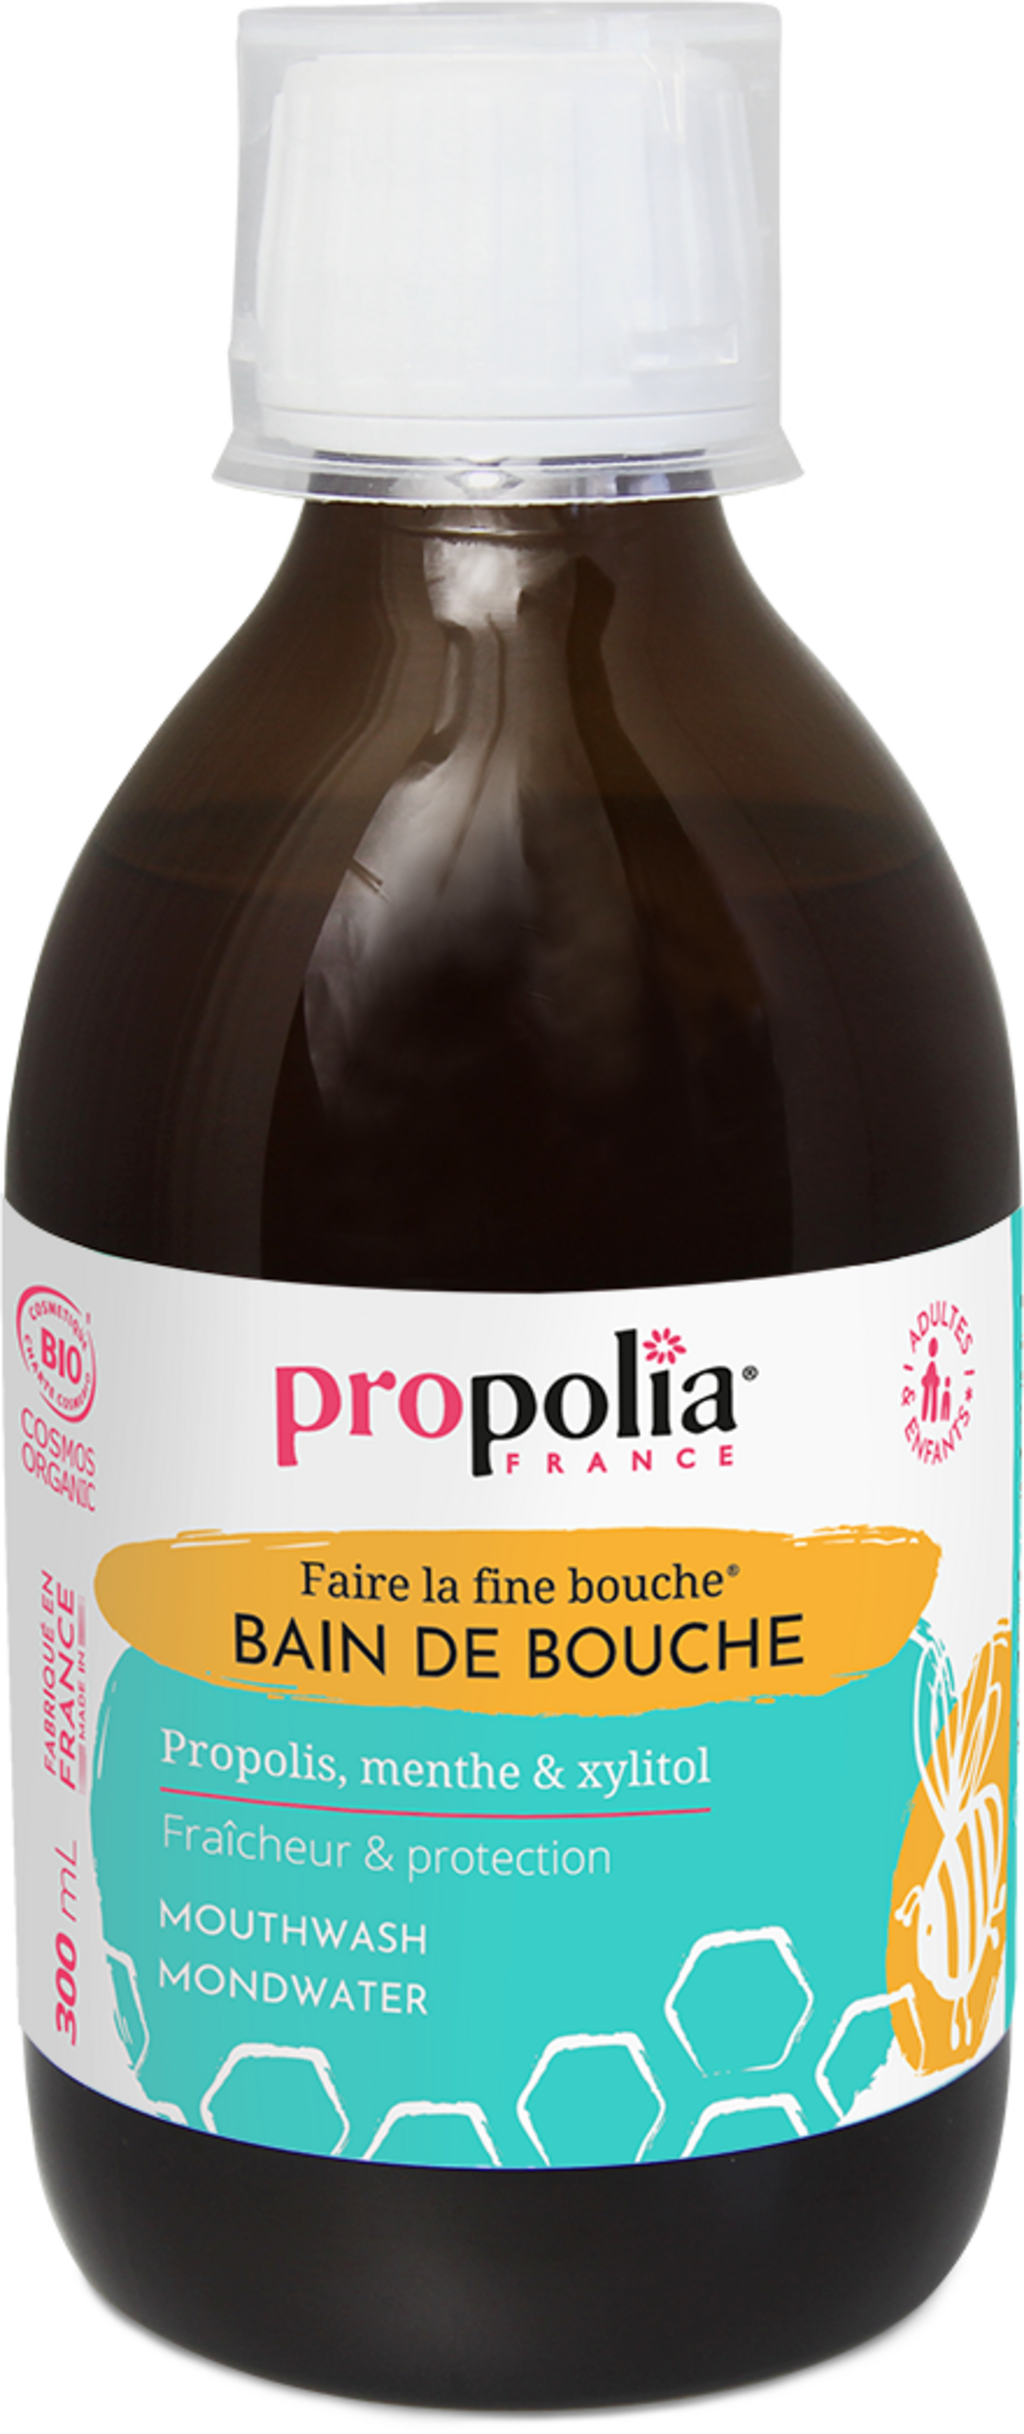 Bain de Bouche Propolis, Menthe, Xylitol